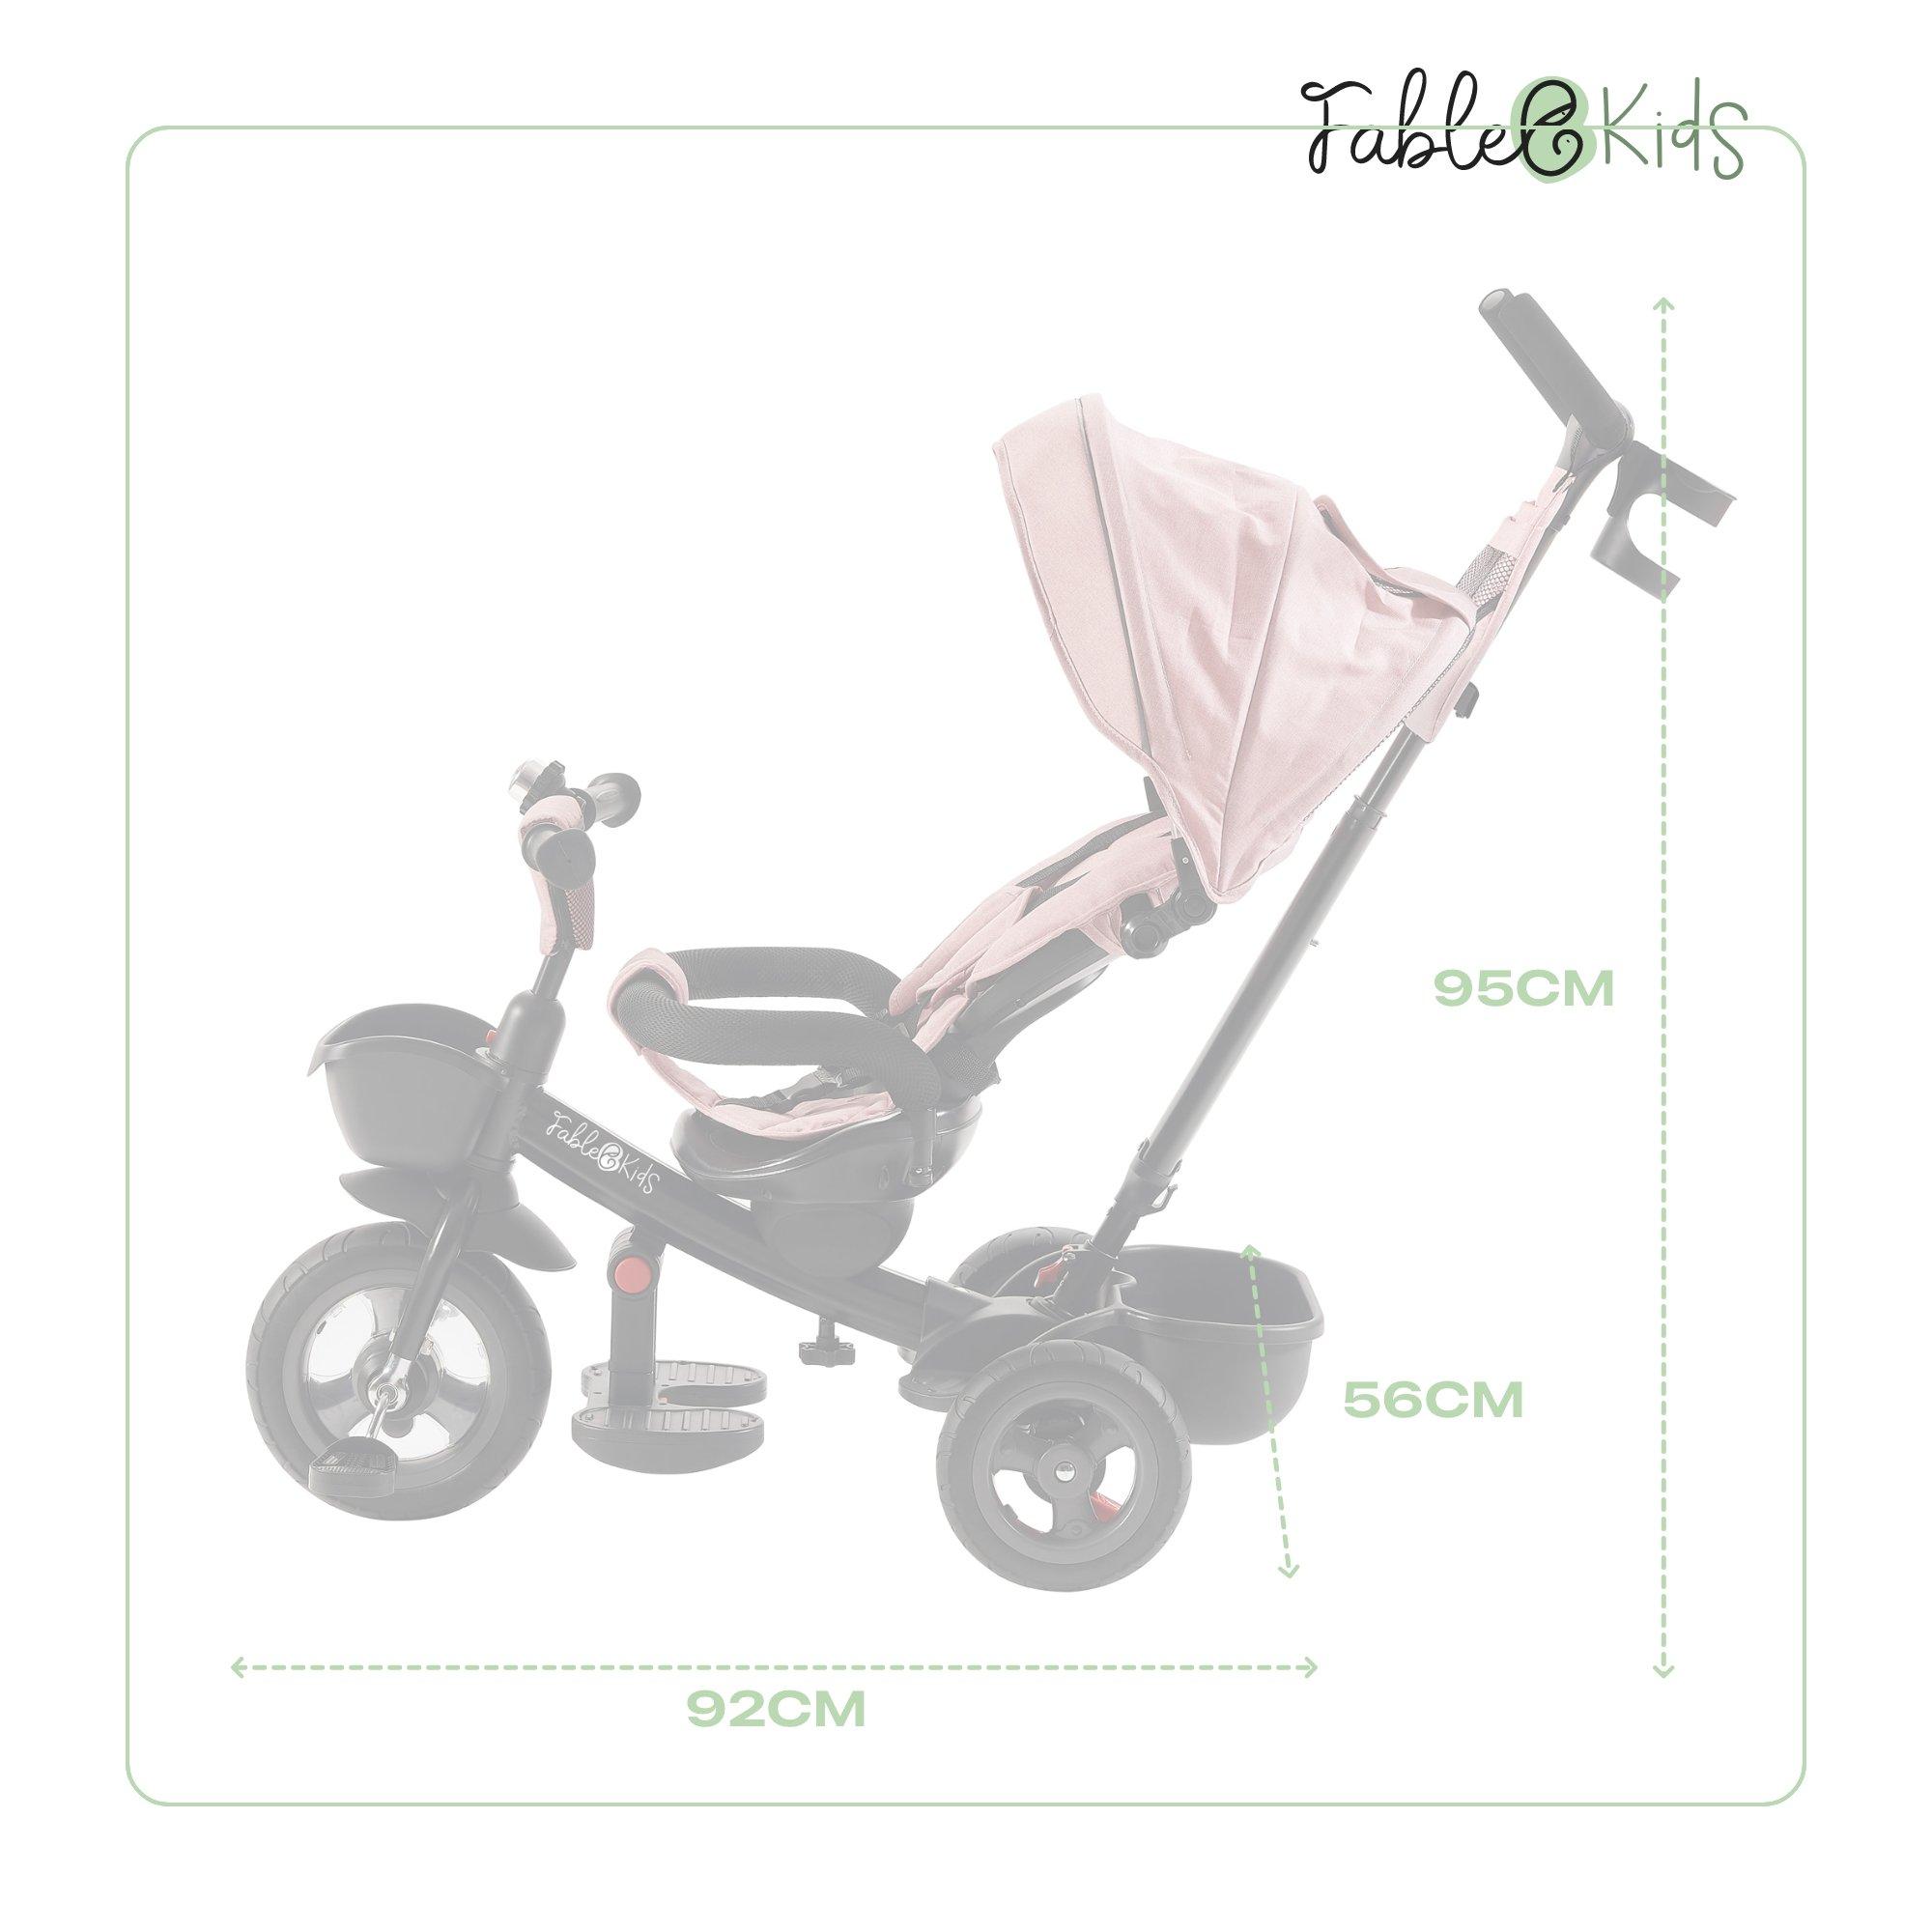 FableKids  Dreirad 5in1 Kinderdreirad Kinder Lenkstange Fahrrad Baby Kinderwagen 